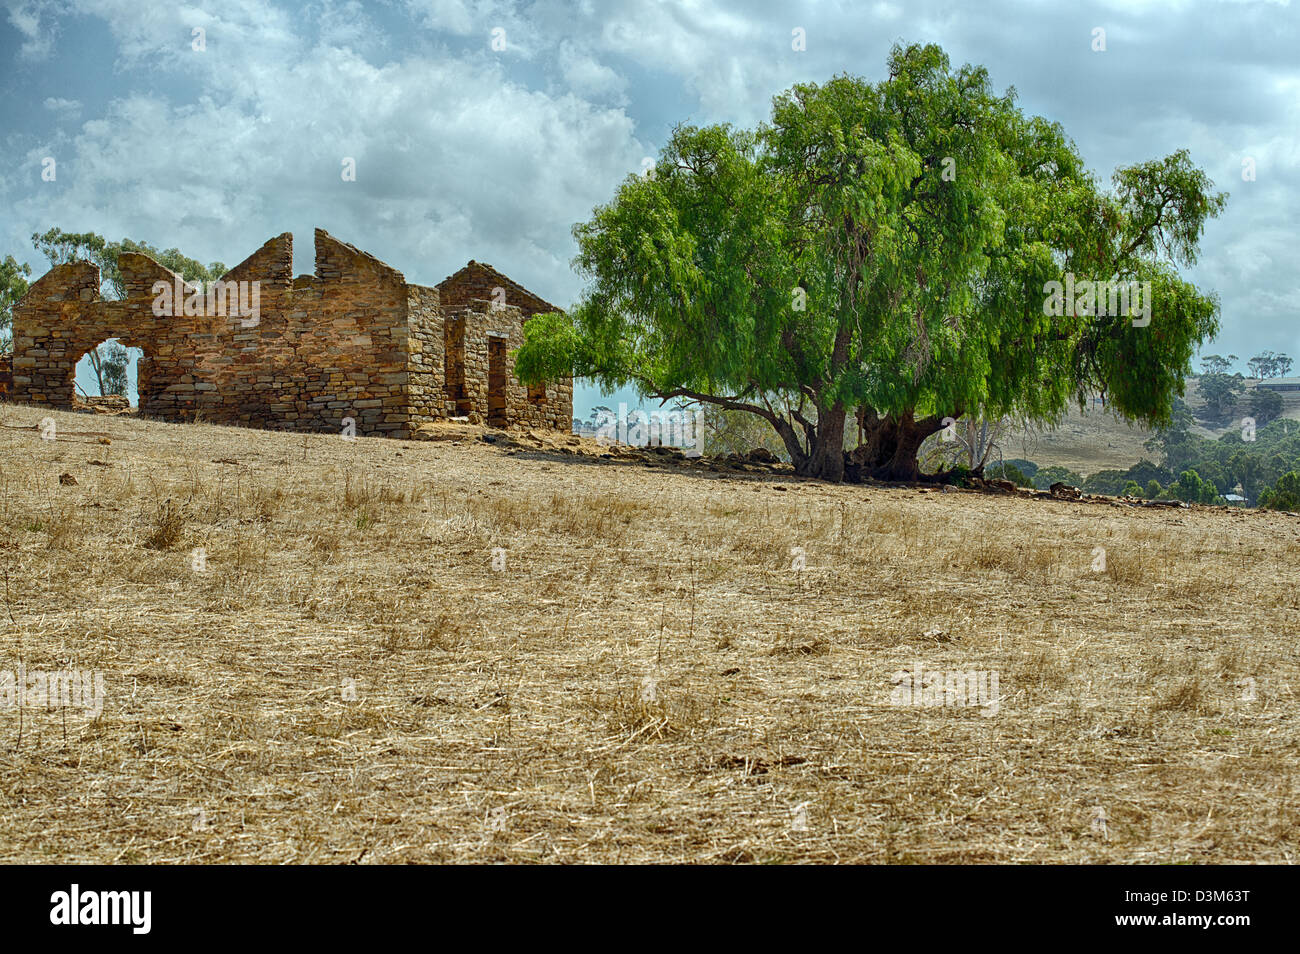 Ruines d'un ancien homestead se trouve dans une cour de ferme à sec dans l'Australie du Sud touchés par la sécheresse. Banque D'Images